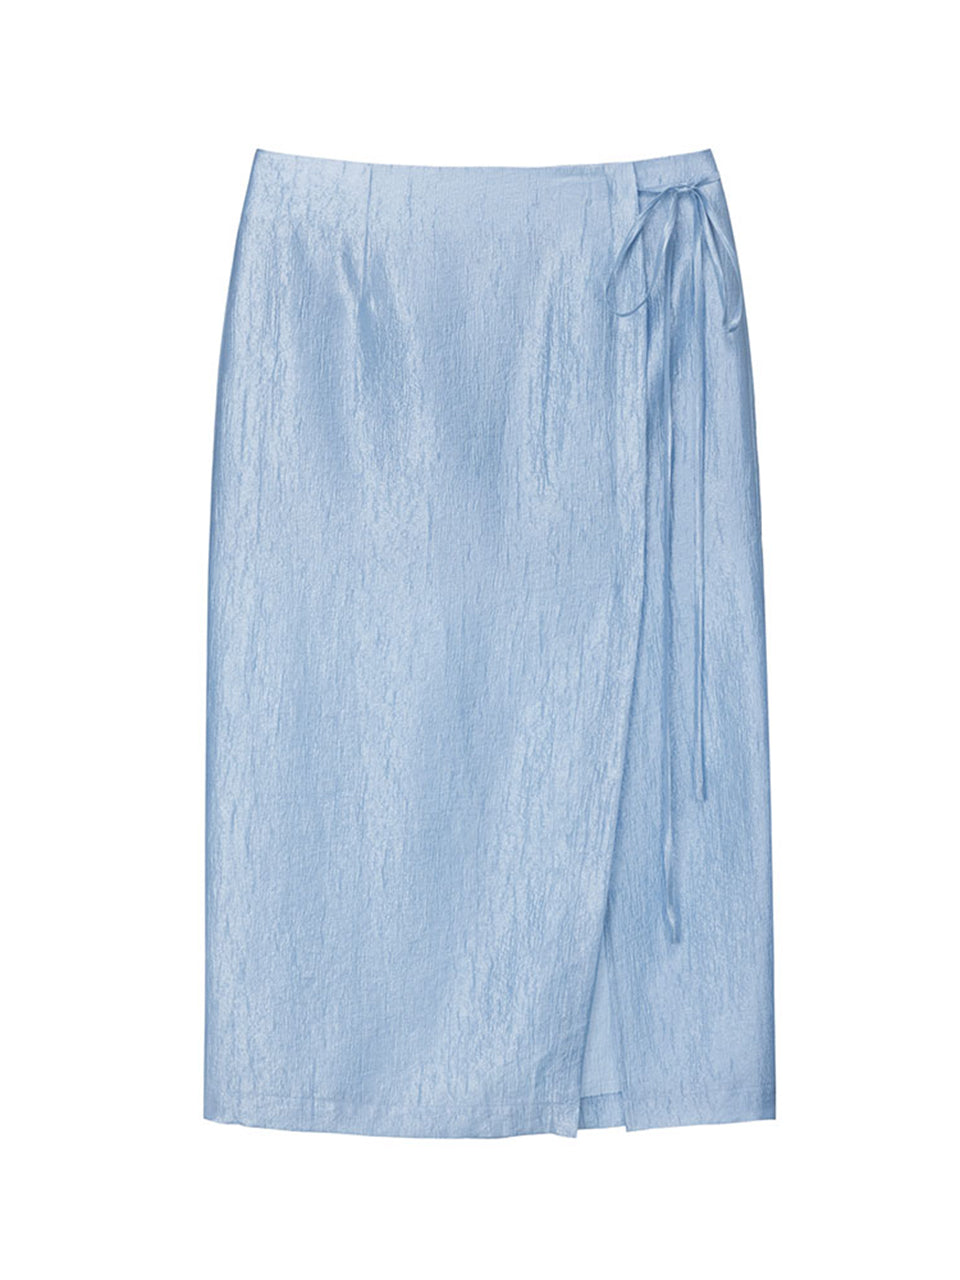 Linkle Silky Skirt in Blue